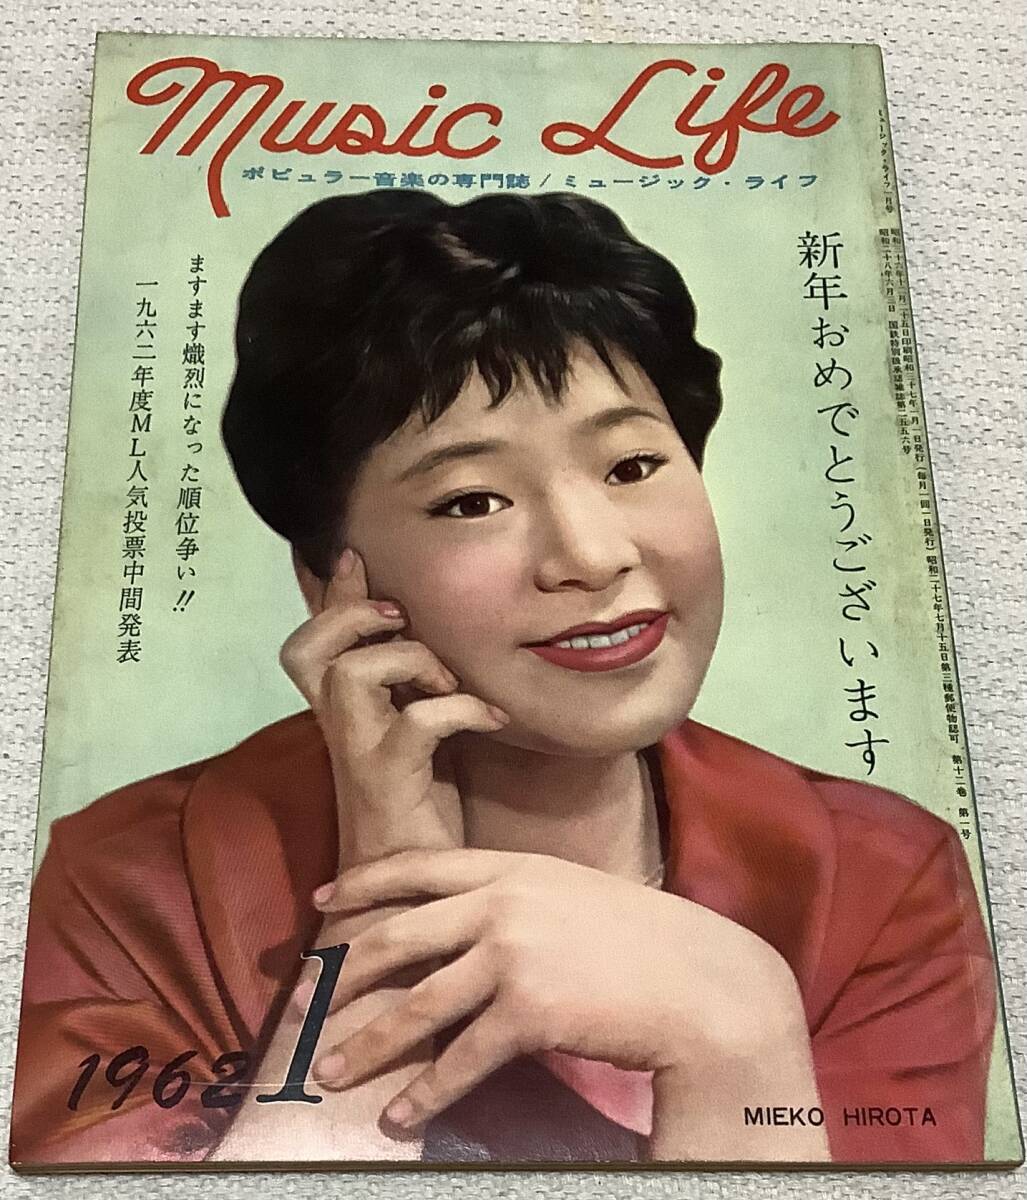 ポピュラー音楽の専門誌 ミュージック・ライフ 1962年1月号 music life 昭和37 古本 雑誌 弘田三枝子の画像1